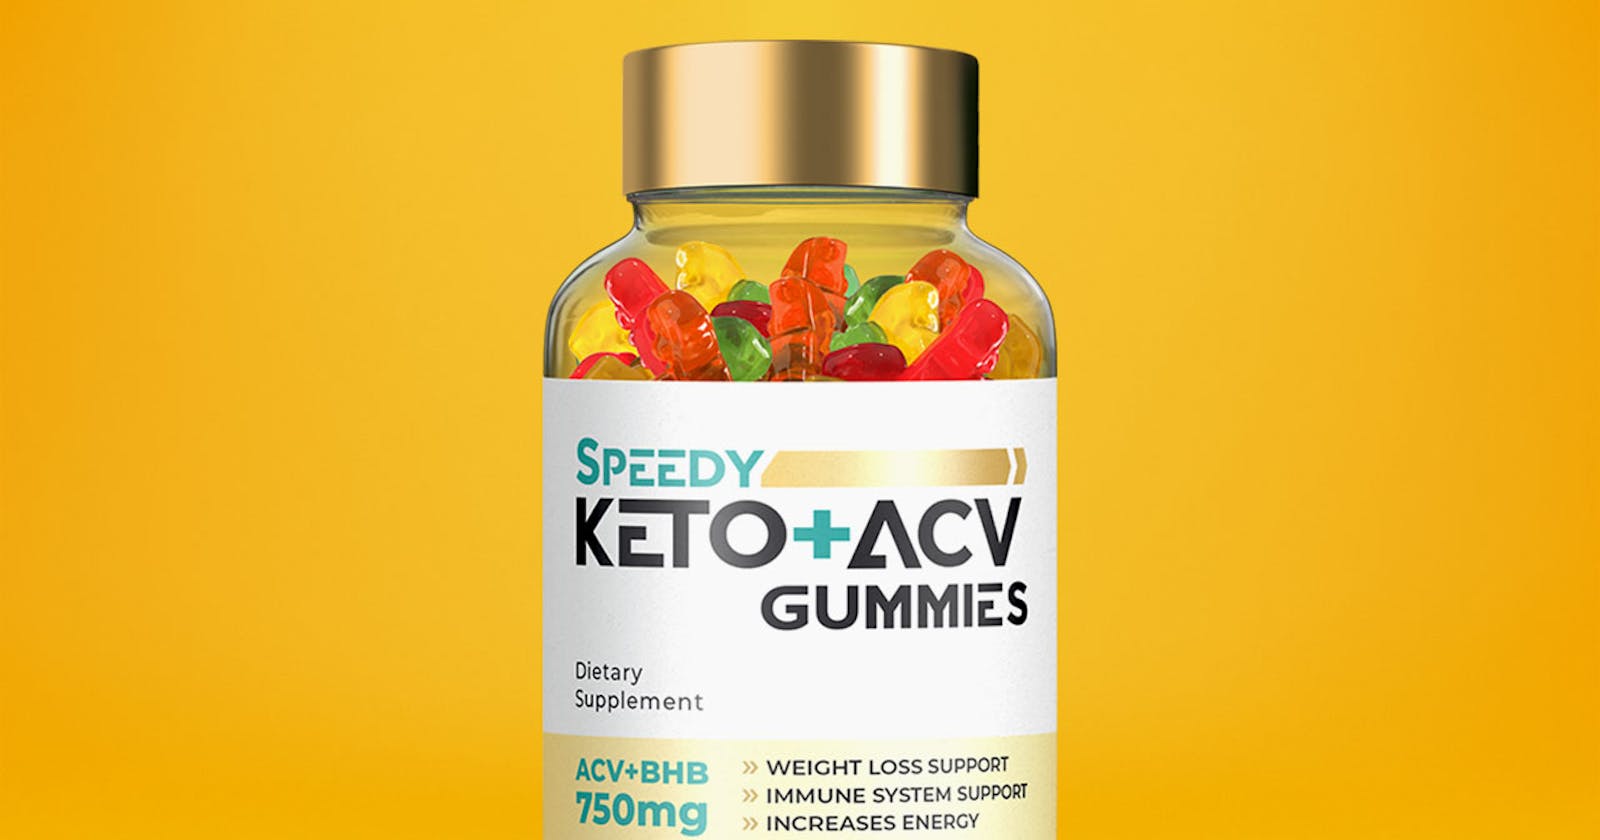 Speedy Keto + ACV Gummies Reviews, Ingredients & Effect